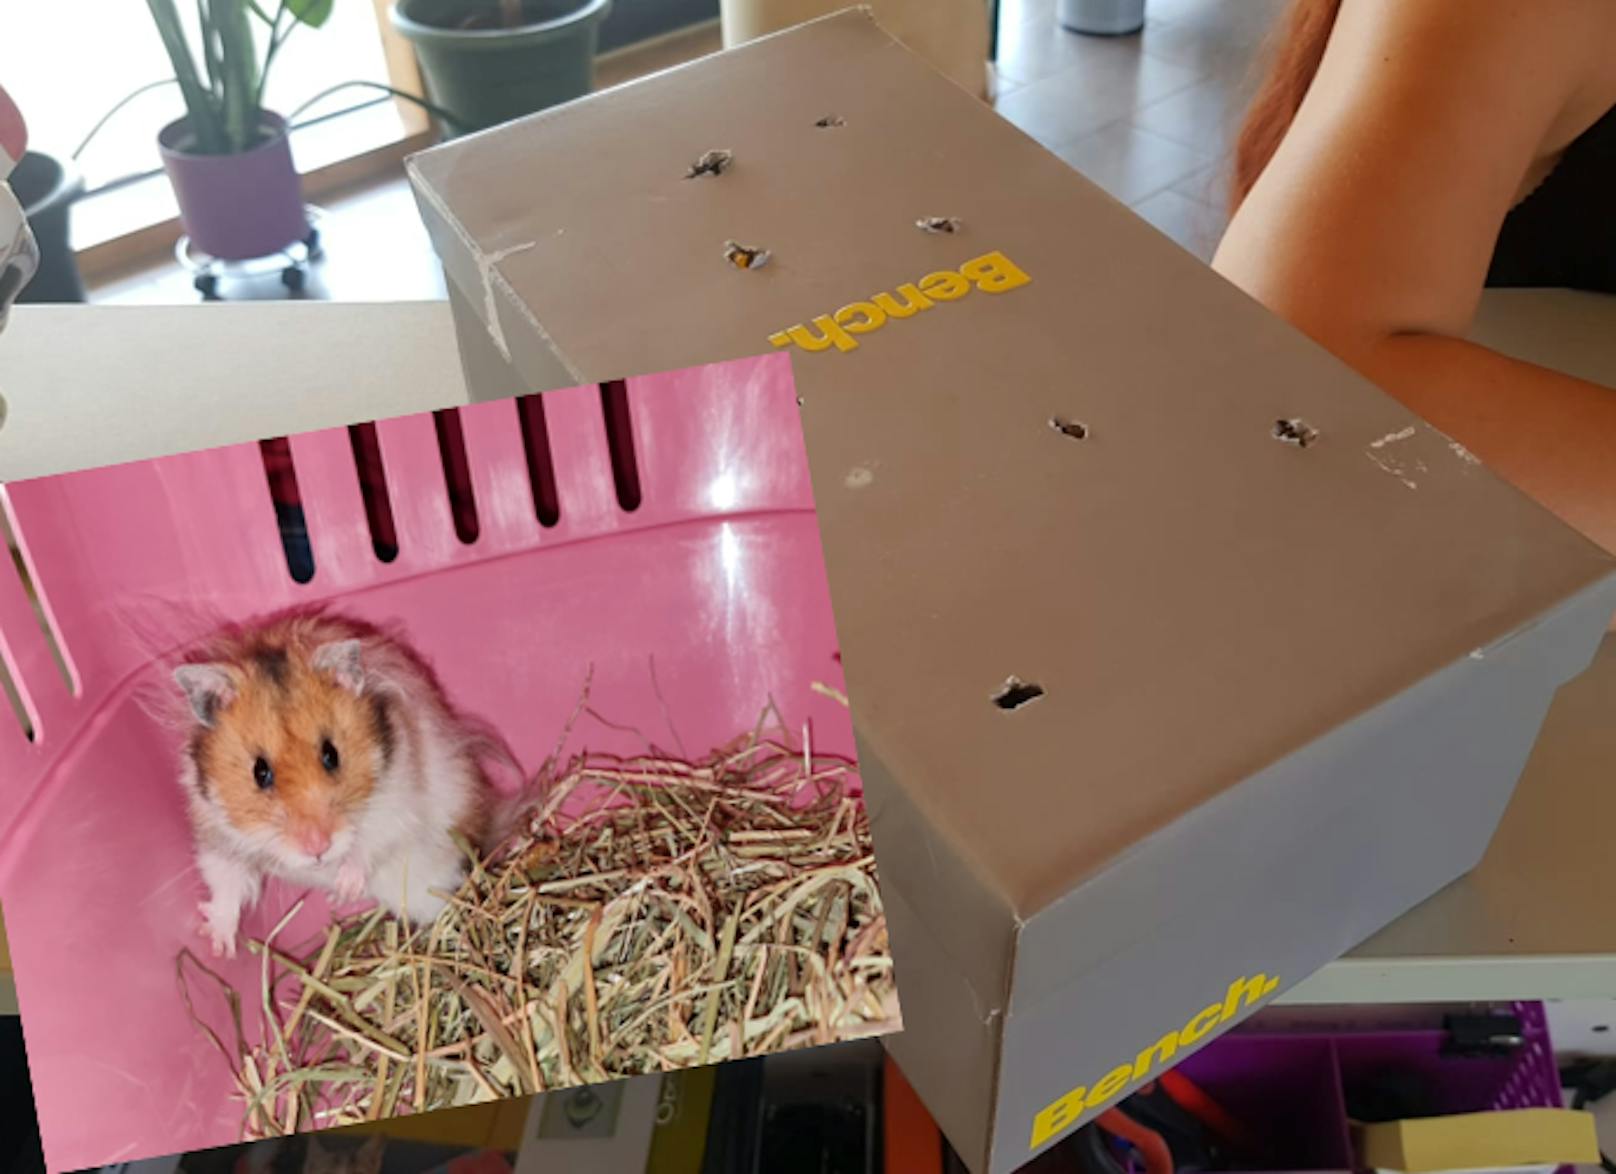 Herzlos! Hamster im Schuhkarton im Wald ausgesetzt